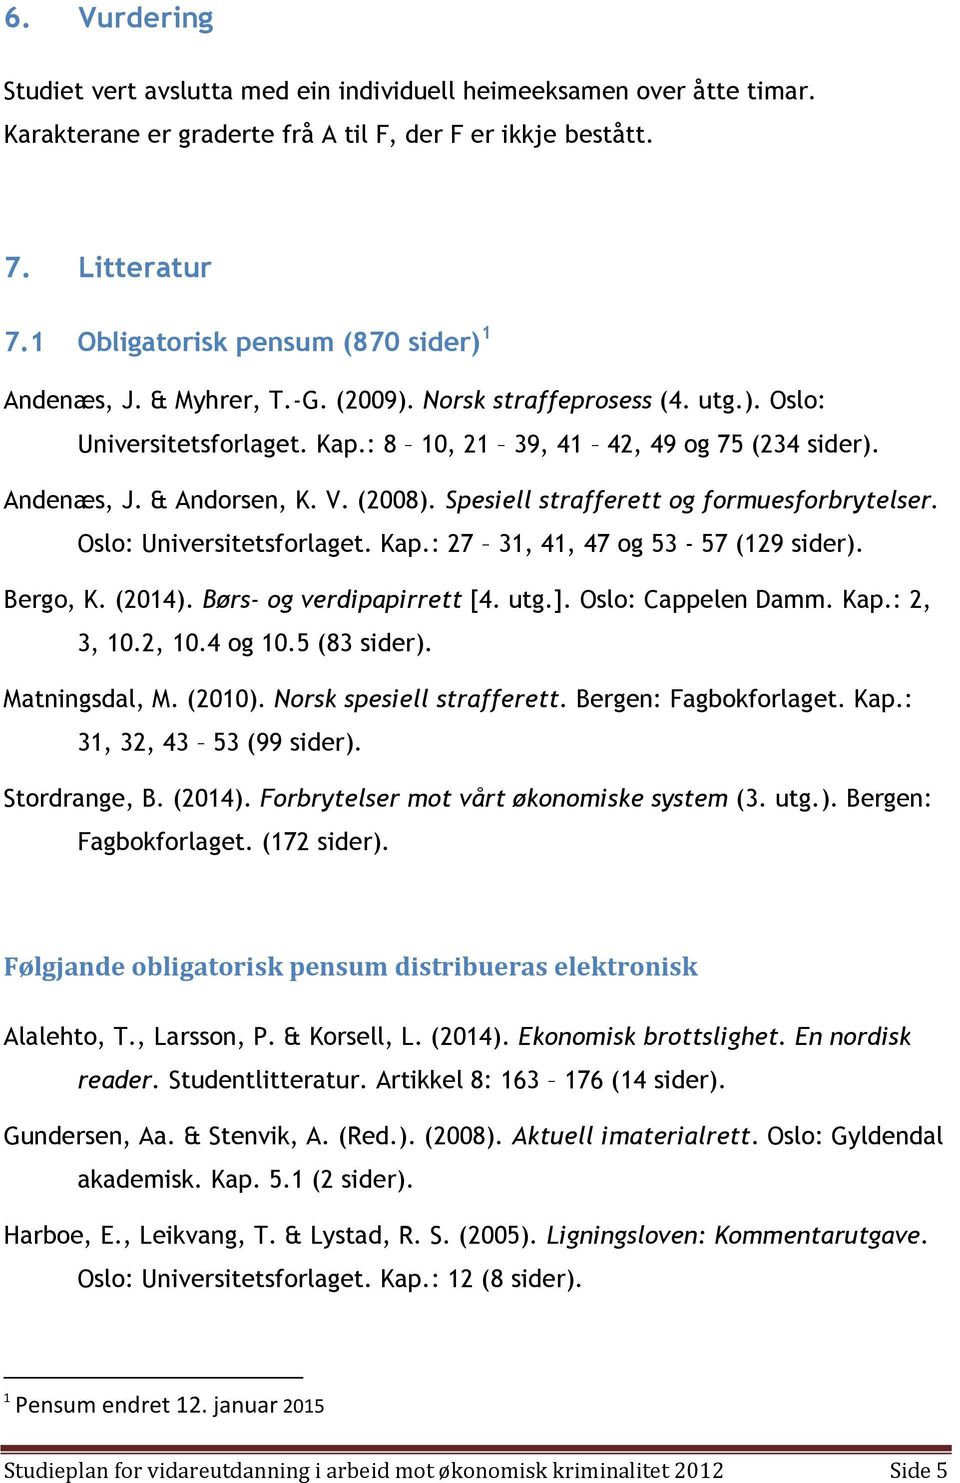 V. (2008). Spesiell strafferett og formuesforbrytelser. Oslo: Universitetsforlaget. Kap.: 27 31, 41, 47 og 53-57 (129 sider). Bergo, K. (2014). Børs- og verdipapirrett [4. utg.]. Oslo: Cappelen Damm.